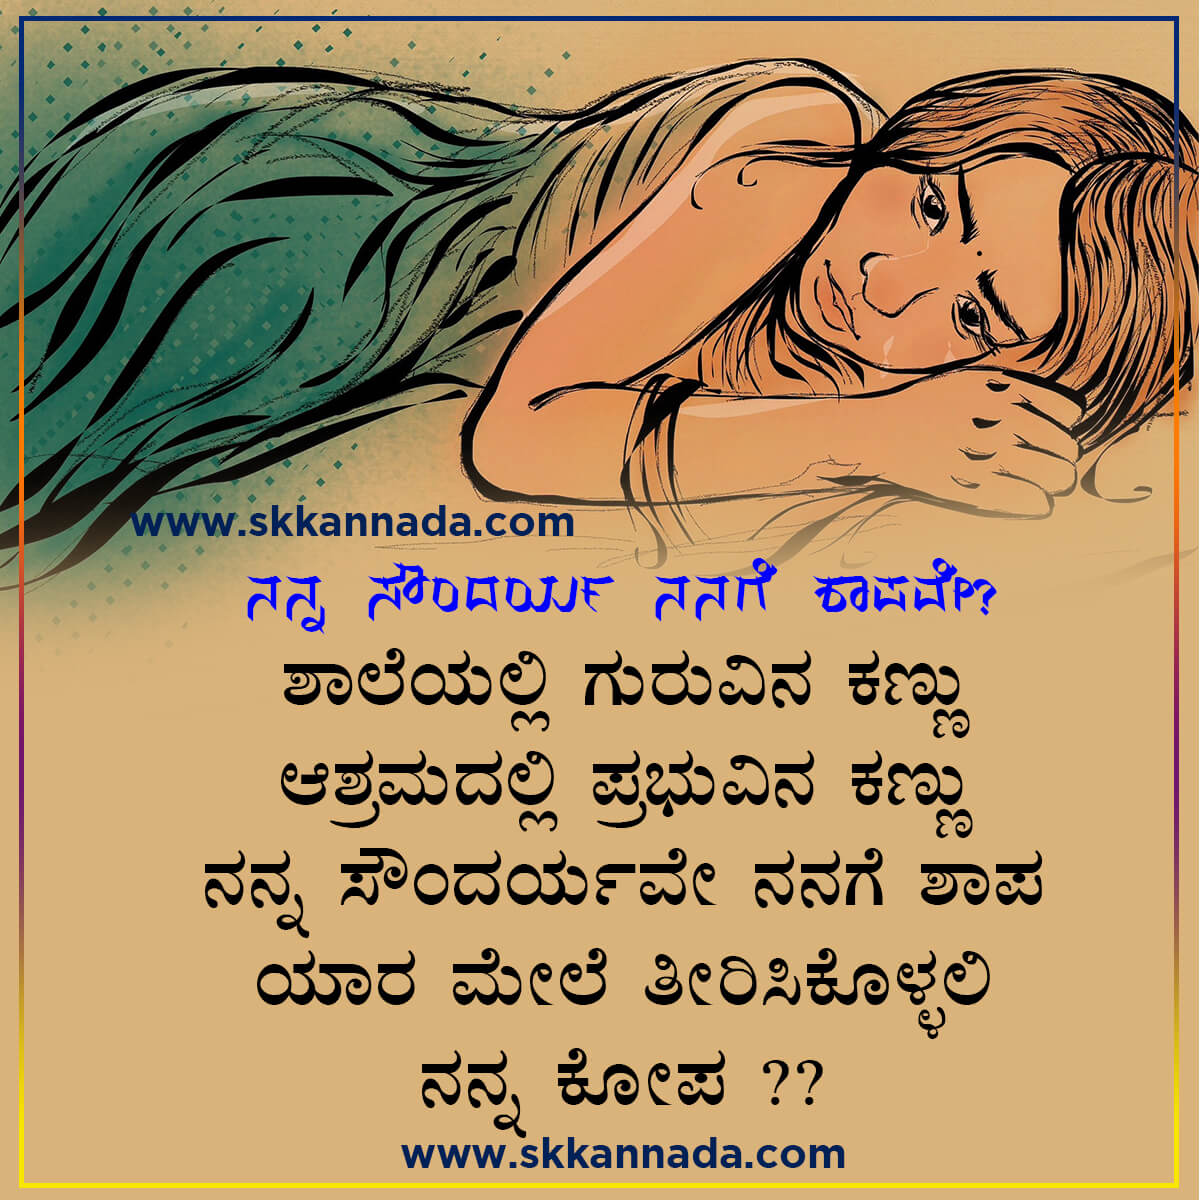 ನನ್ನ ಸೌಂದರ್ಯ ನನಗೆ ಶಾಪವೇ? - Kannada Sad Poetry ...